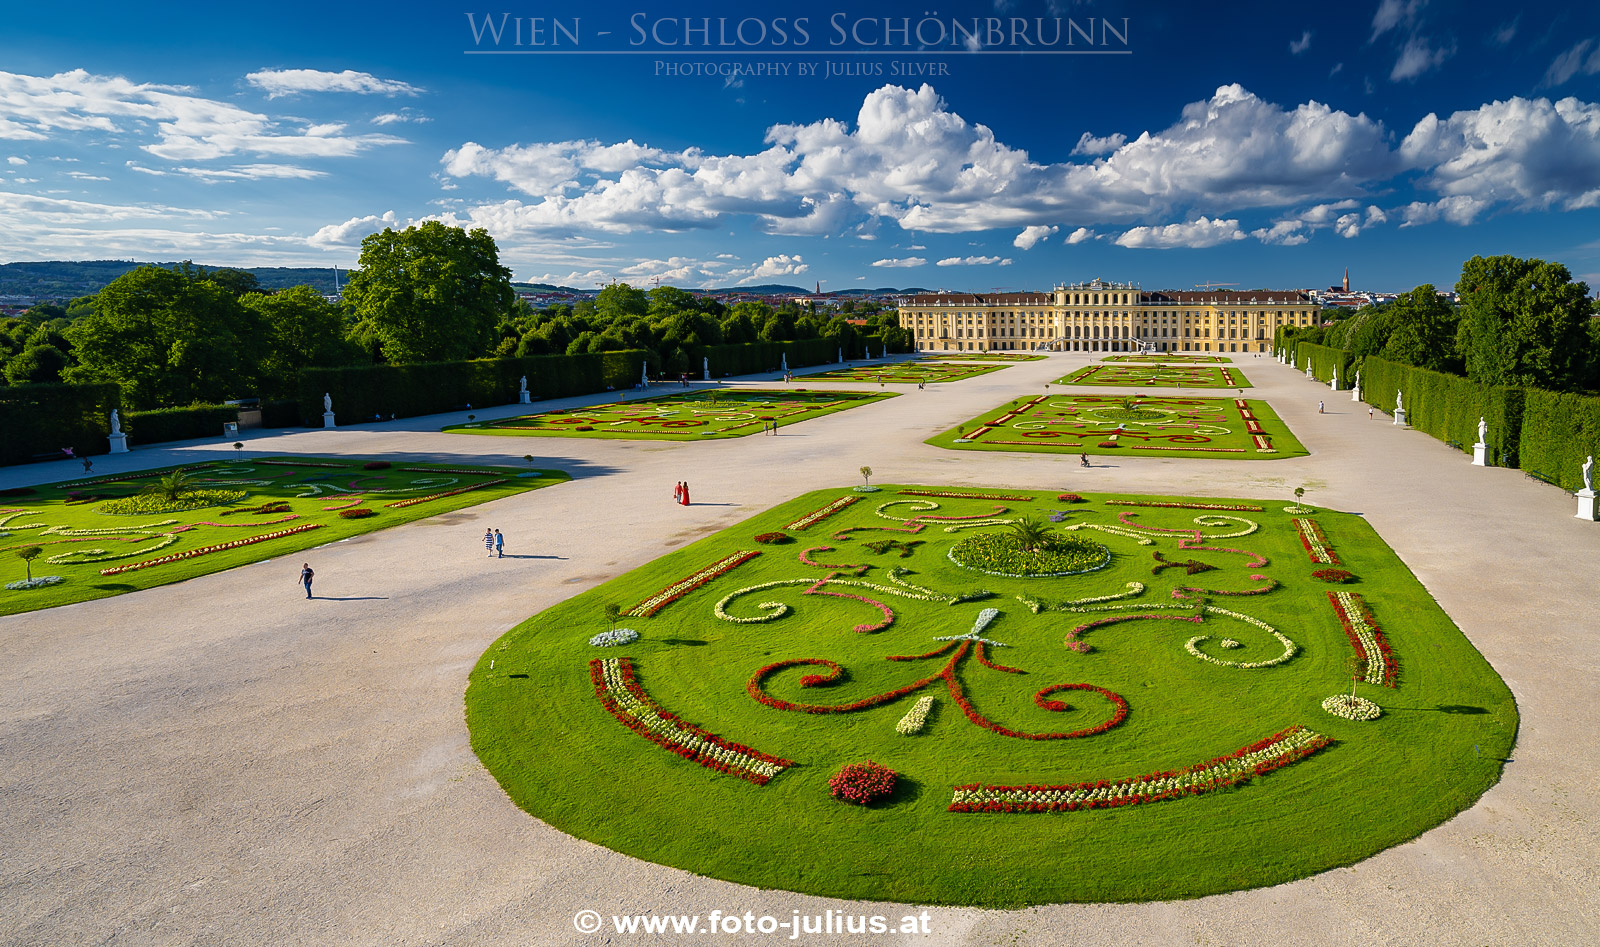 W7151a_Wien_Schloss_Schonbrunn.jpg, 696kB